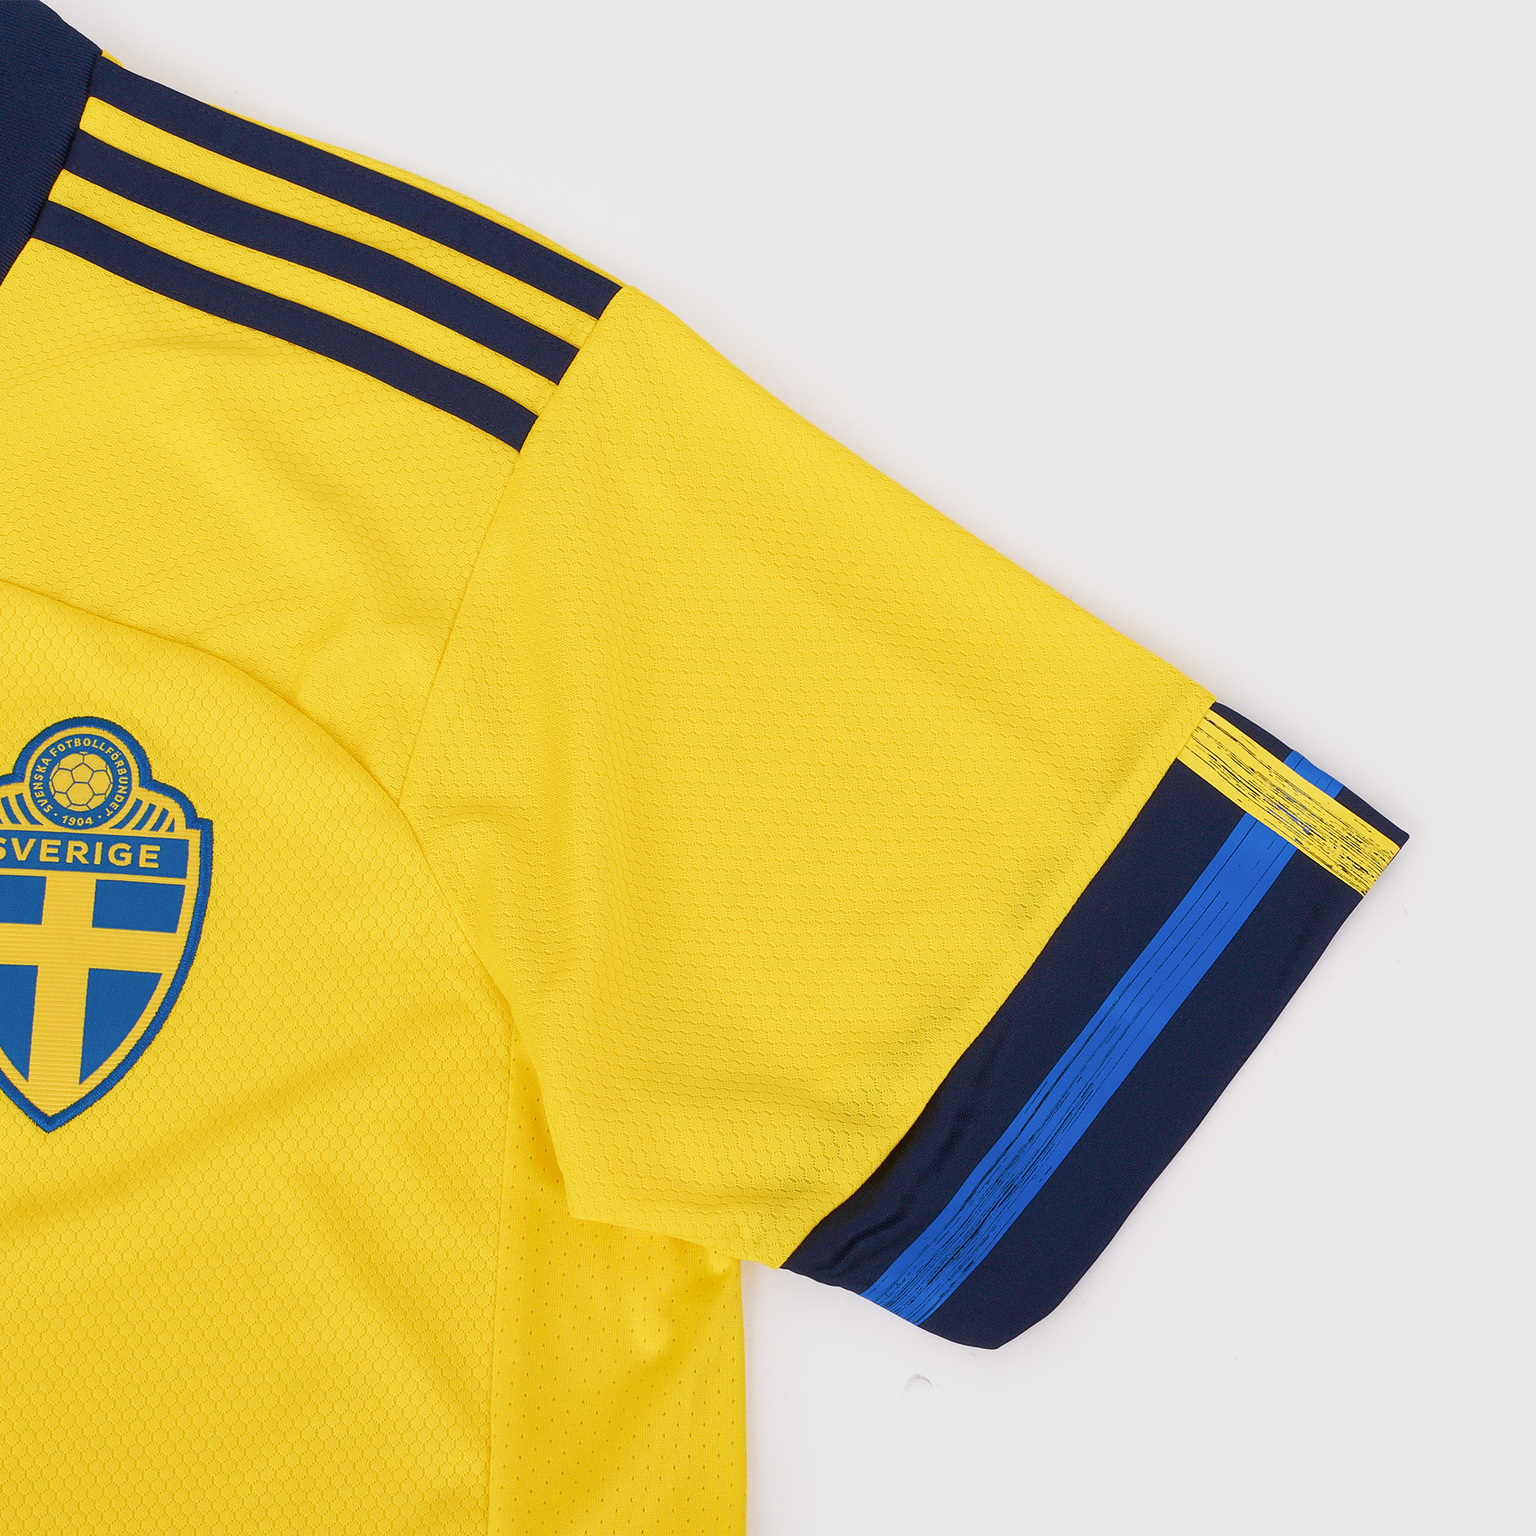 Футболка игровая домашняя Adidas сборной Швеции сезон 2020/21